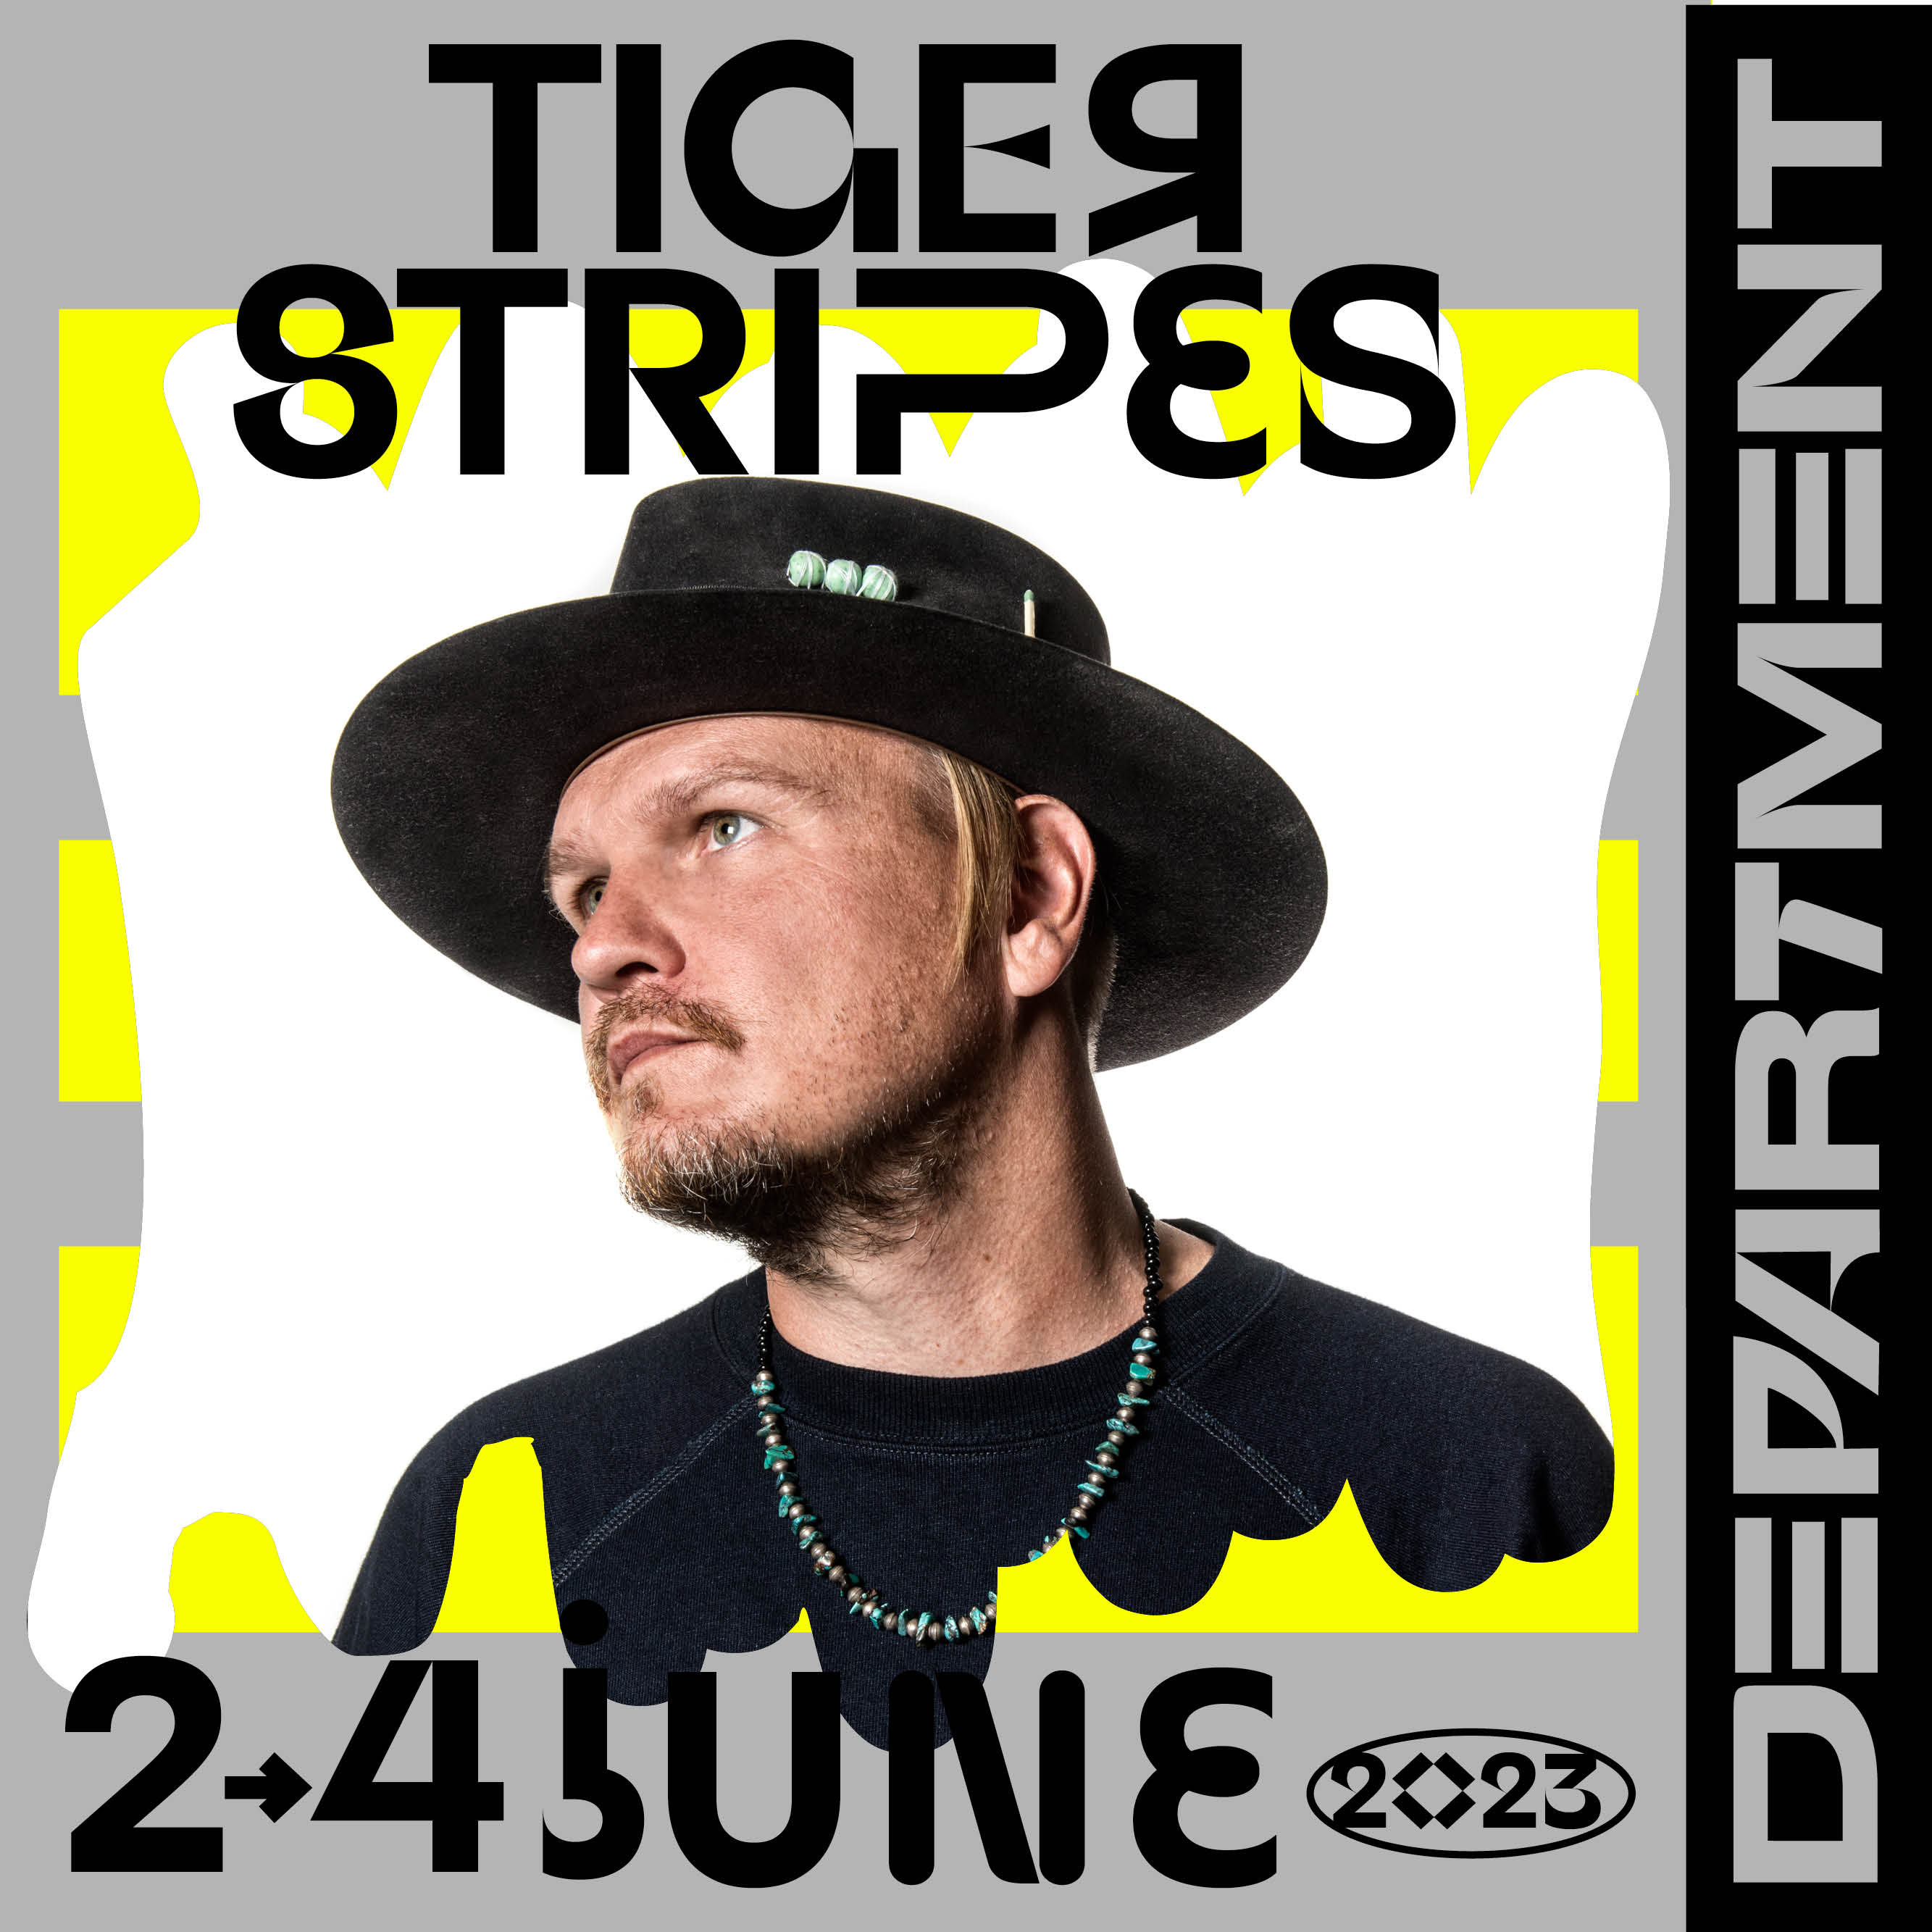 Tiger Stripes Stockholm Department Festival